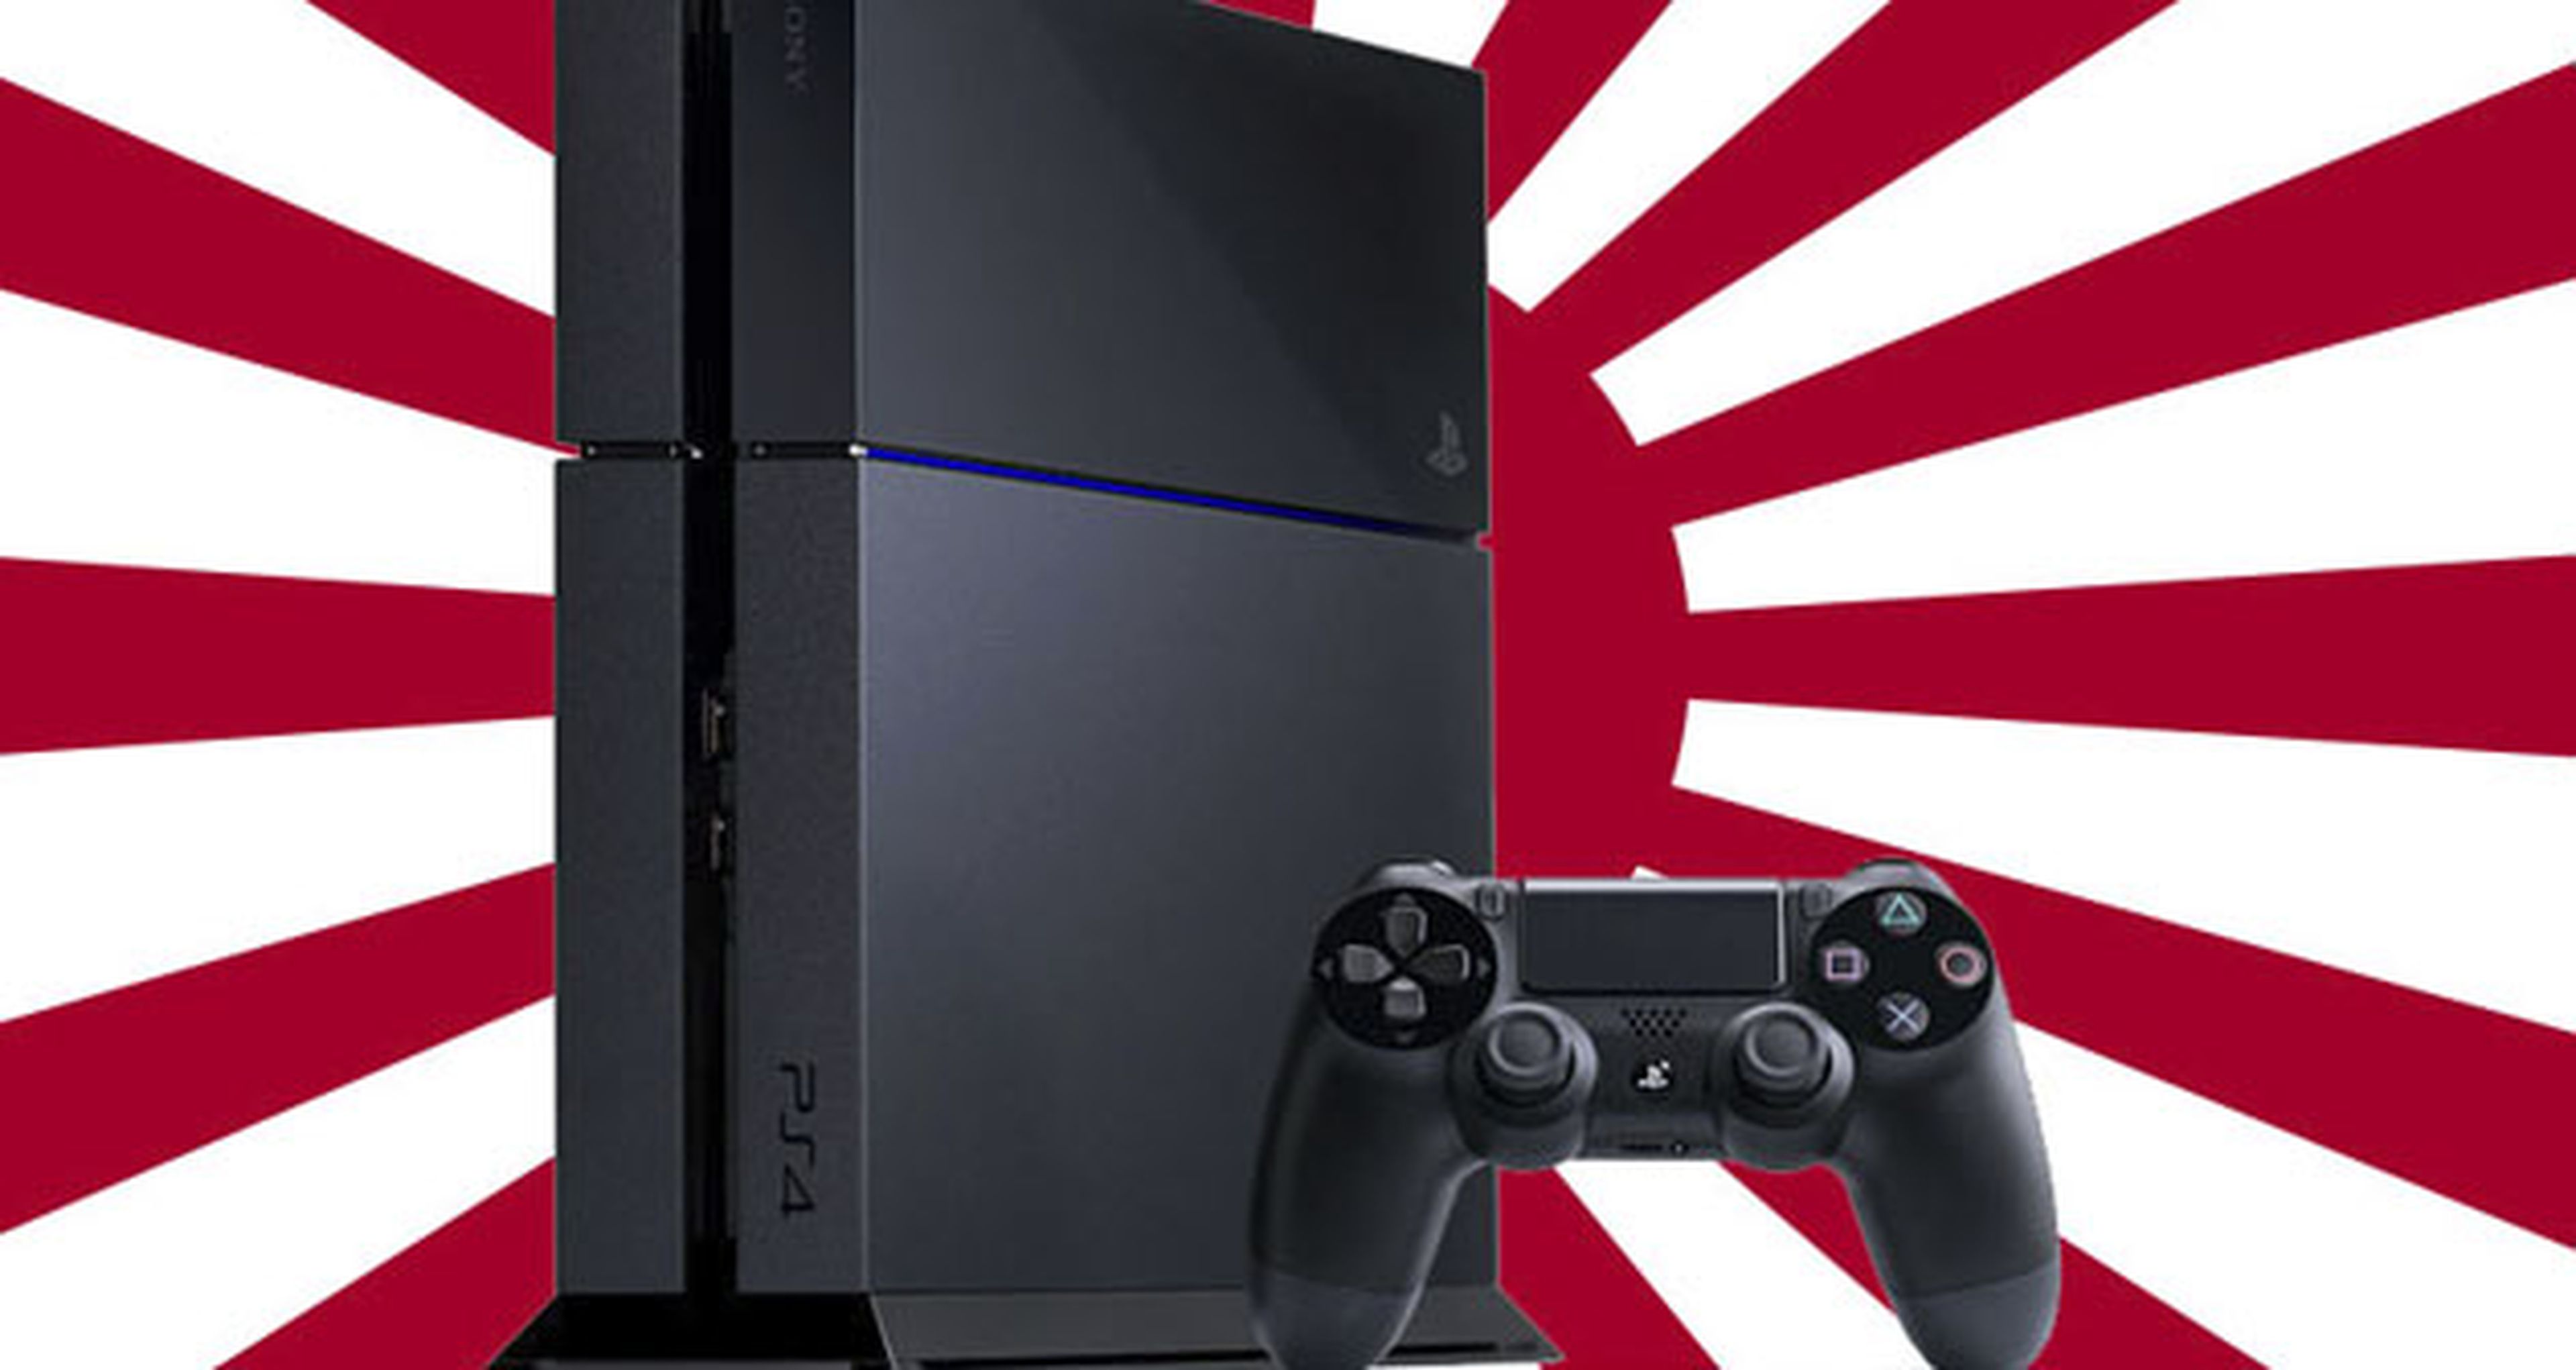 Las ventas de PS4 caen bruscamente en Japón